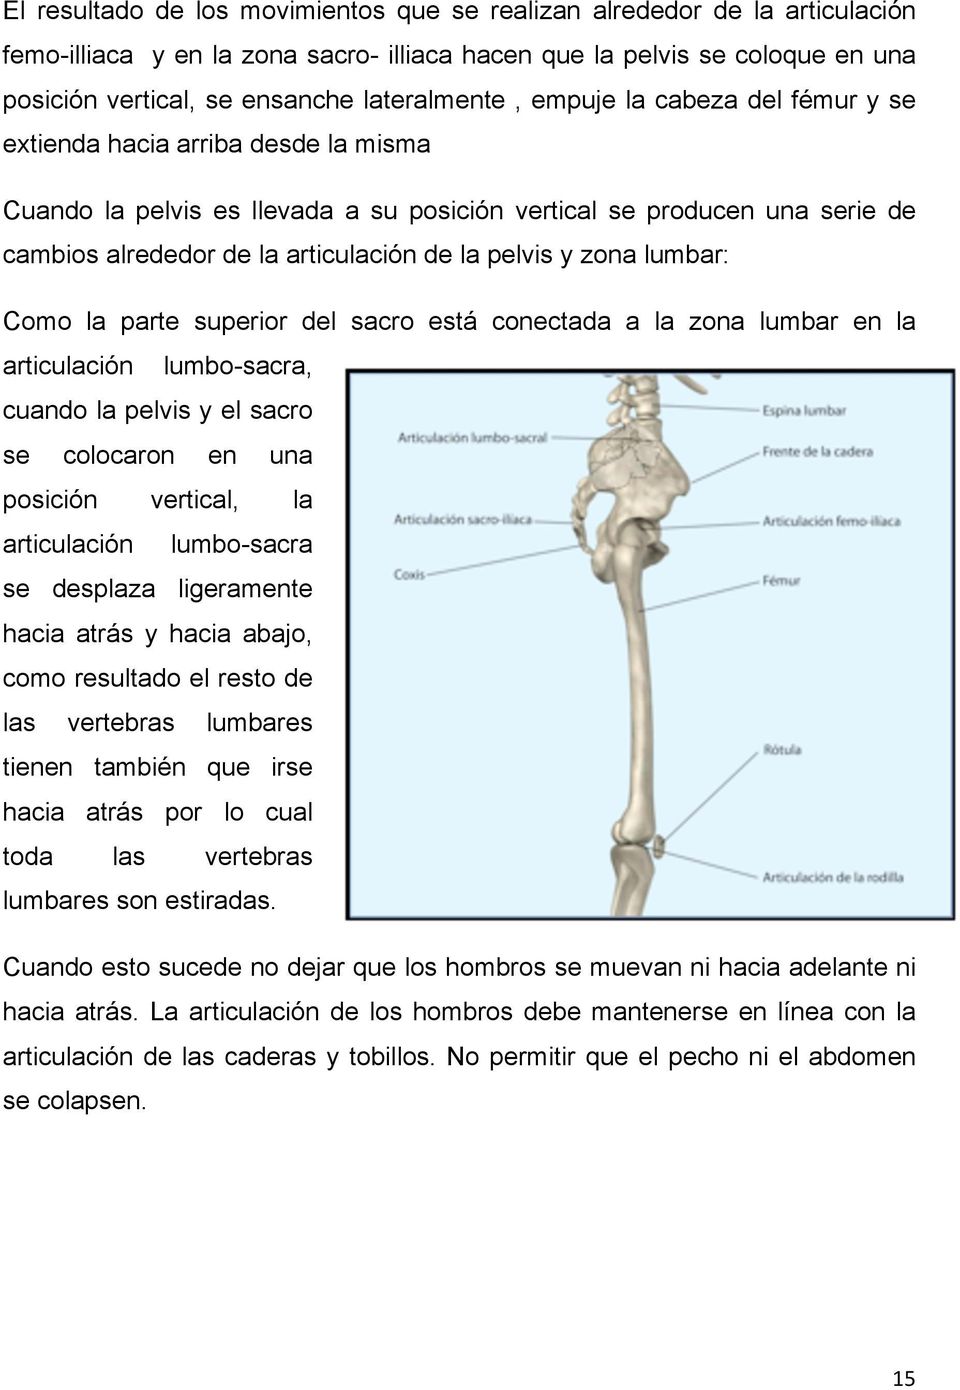 la pelvis y zona lumbar: Como la parte superior del sacro está conectada a la zona lumbar en la articulación lumbo-sacra, cuando la pelvis y el sacro se colocaron en una posición vertical, la